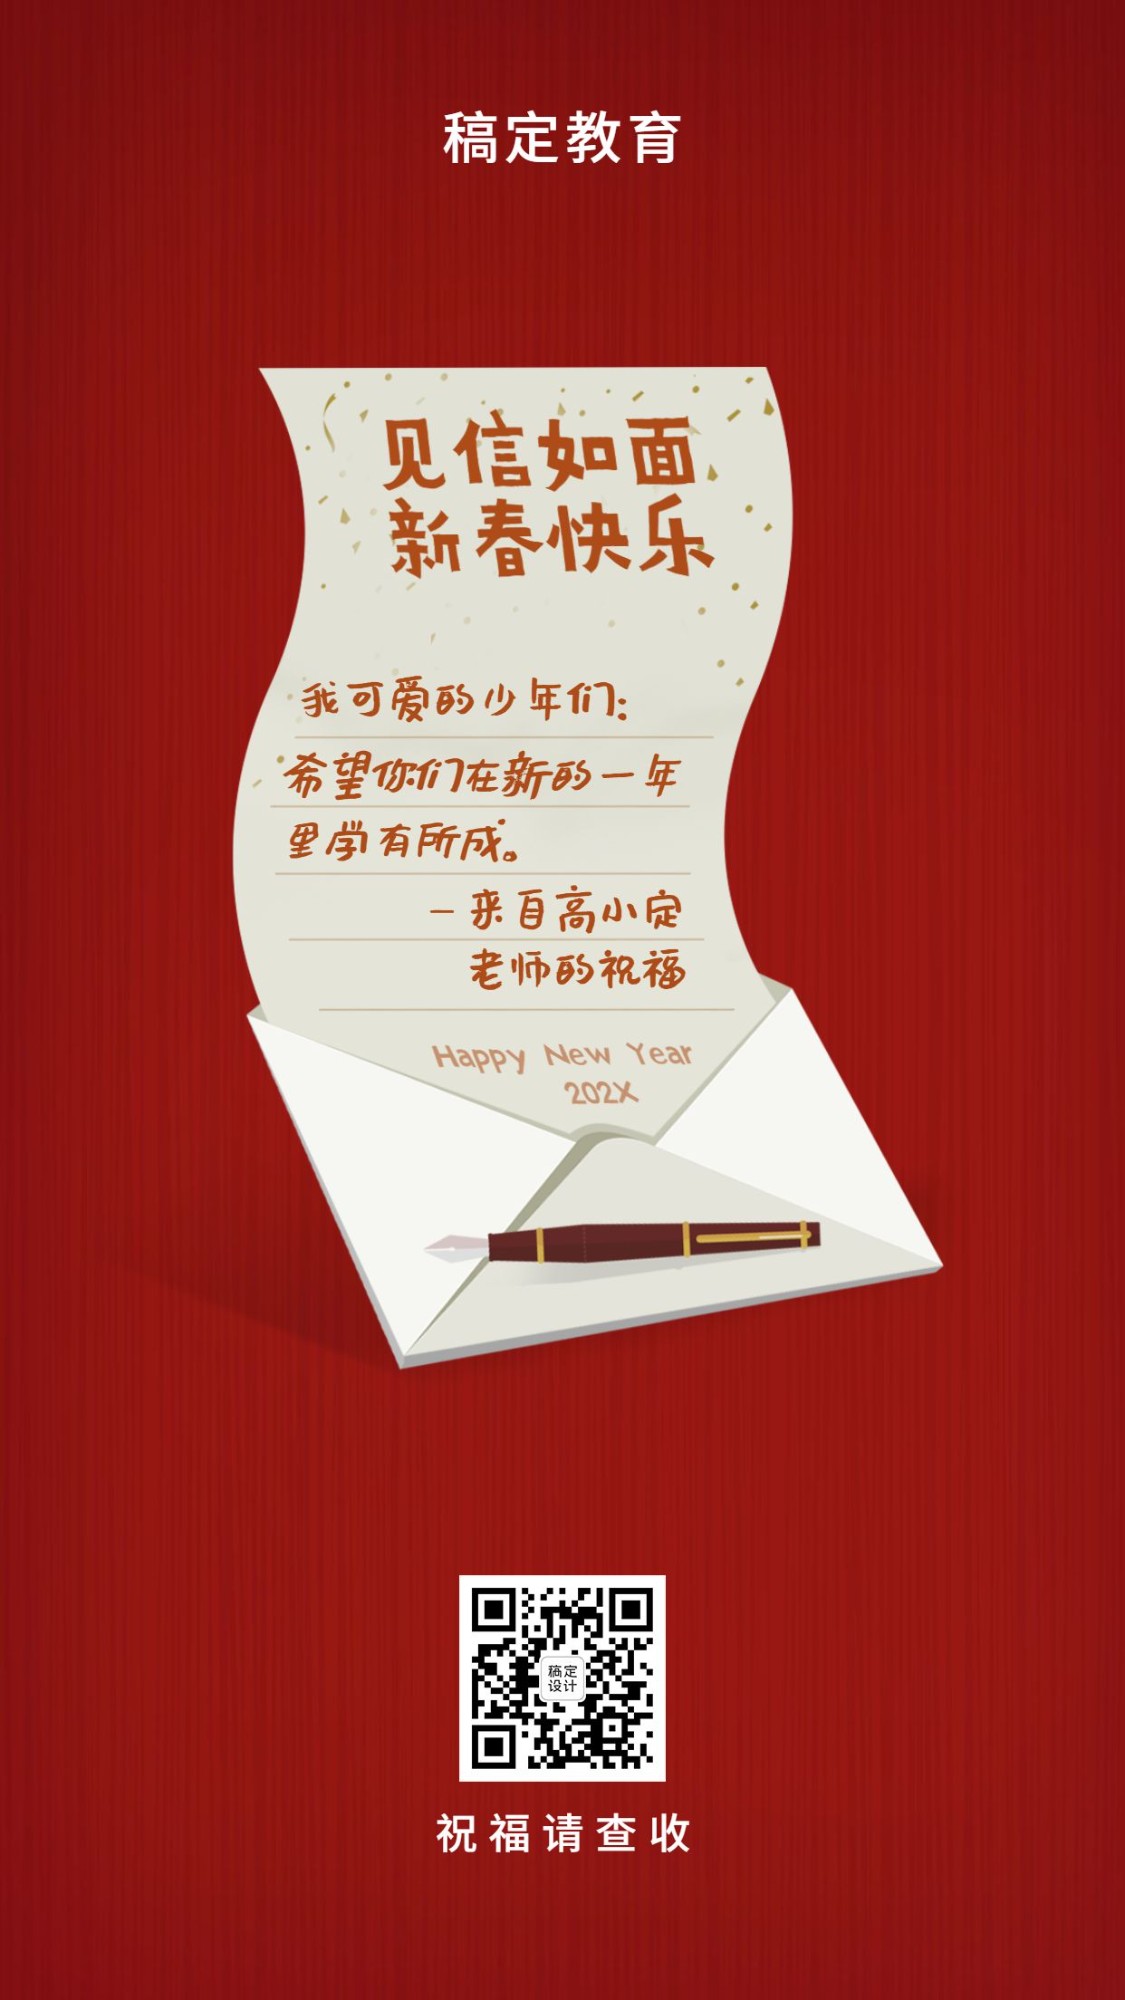 机构春节新年祝福贺卡手机海报预览效果